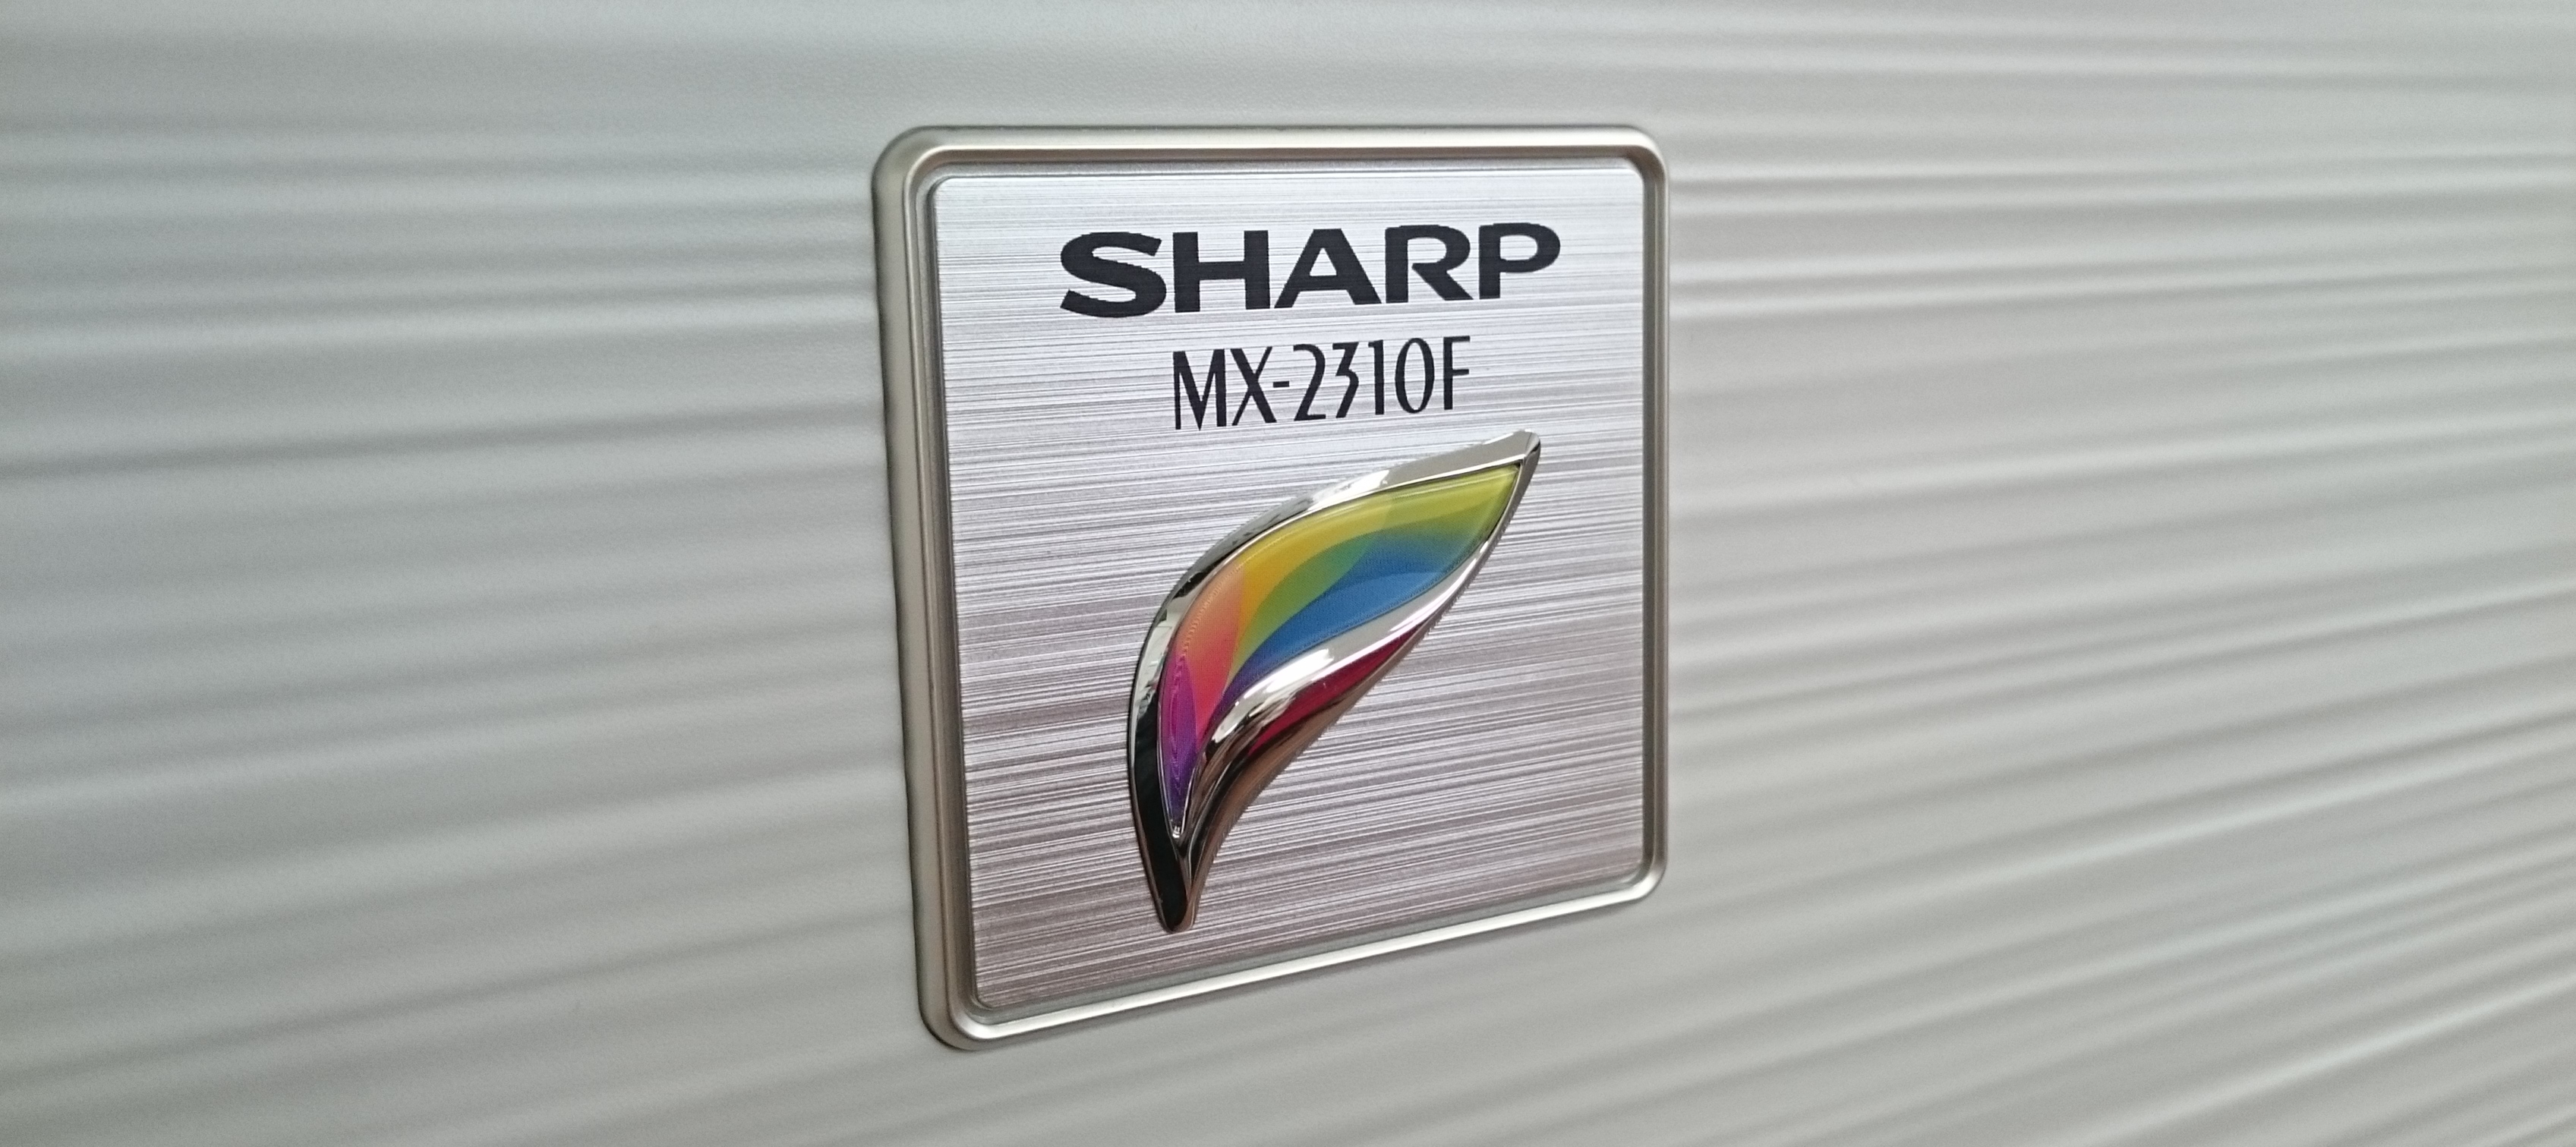 Windows10でSHARPの複合機MX-2310Fのスキャナ画像が保存できない